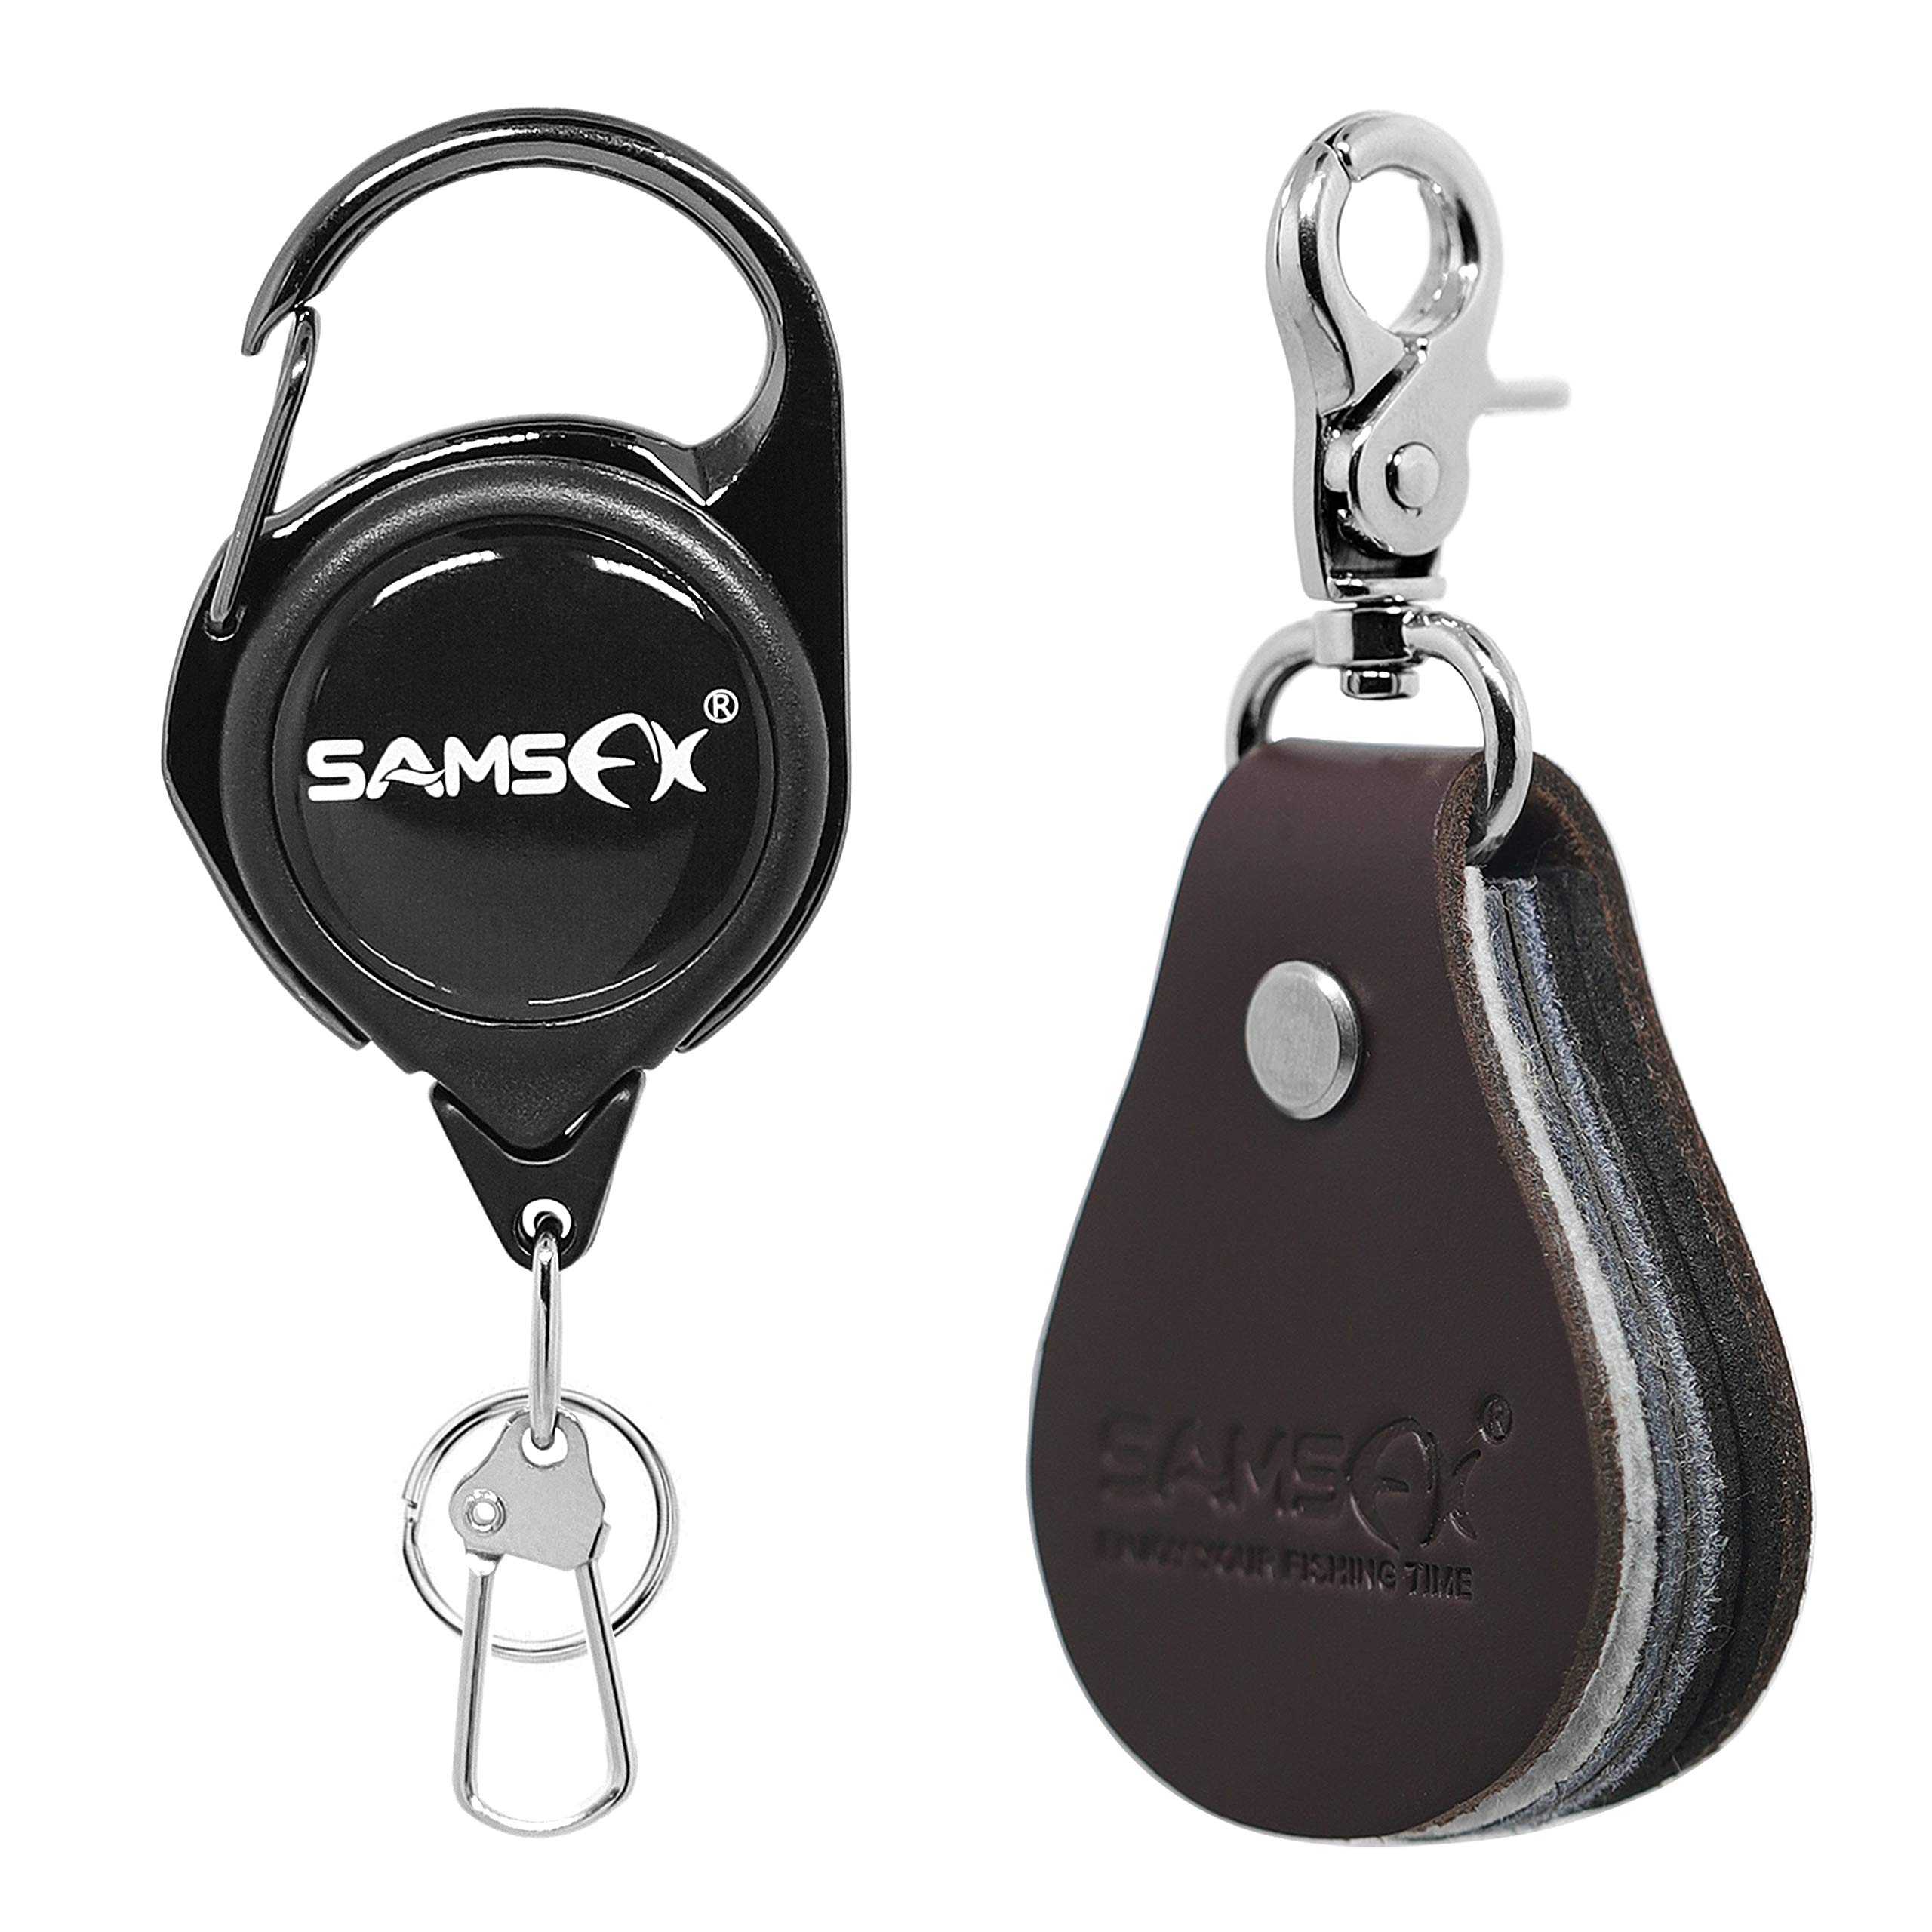 SAMSFX - Gears Brands